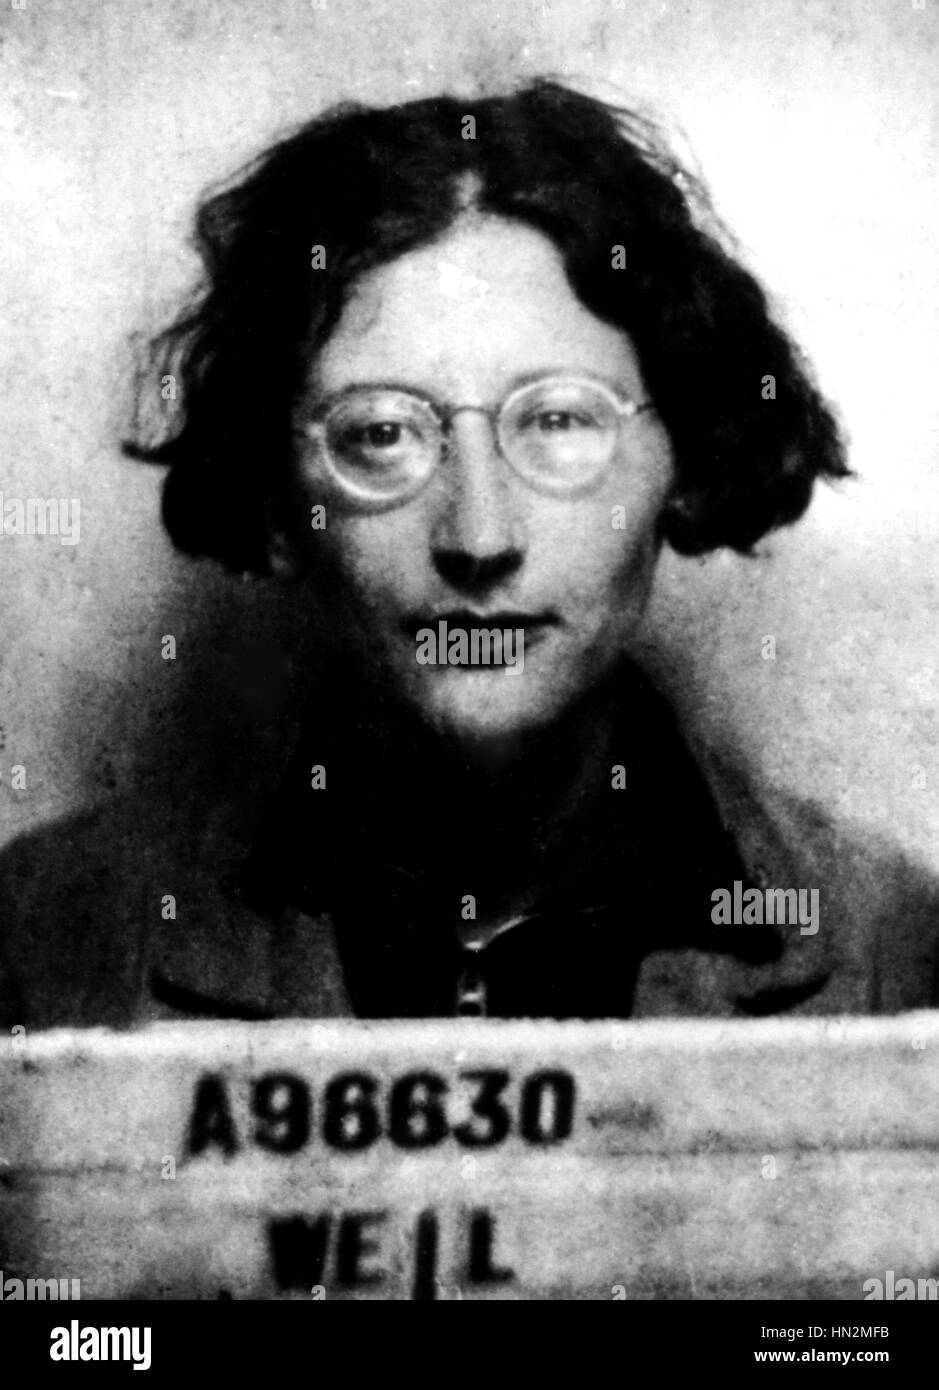 Simone Weil administrative Fabriknummer (1909-1943). (sie war ein Fabrikarbeiter bei Renault in 1934-1935) 20. Jahrhundert Frankreich Privatsammlung Stockfoto